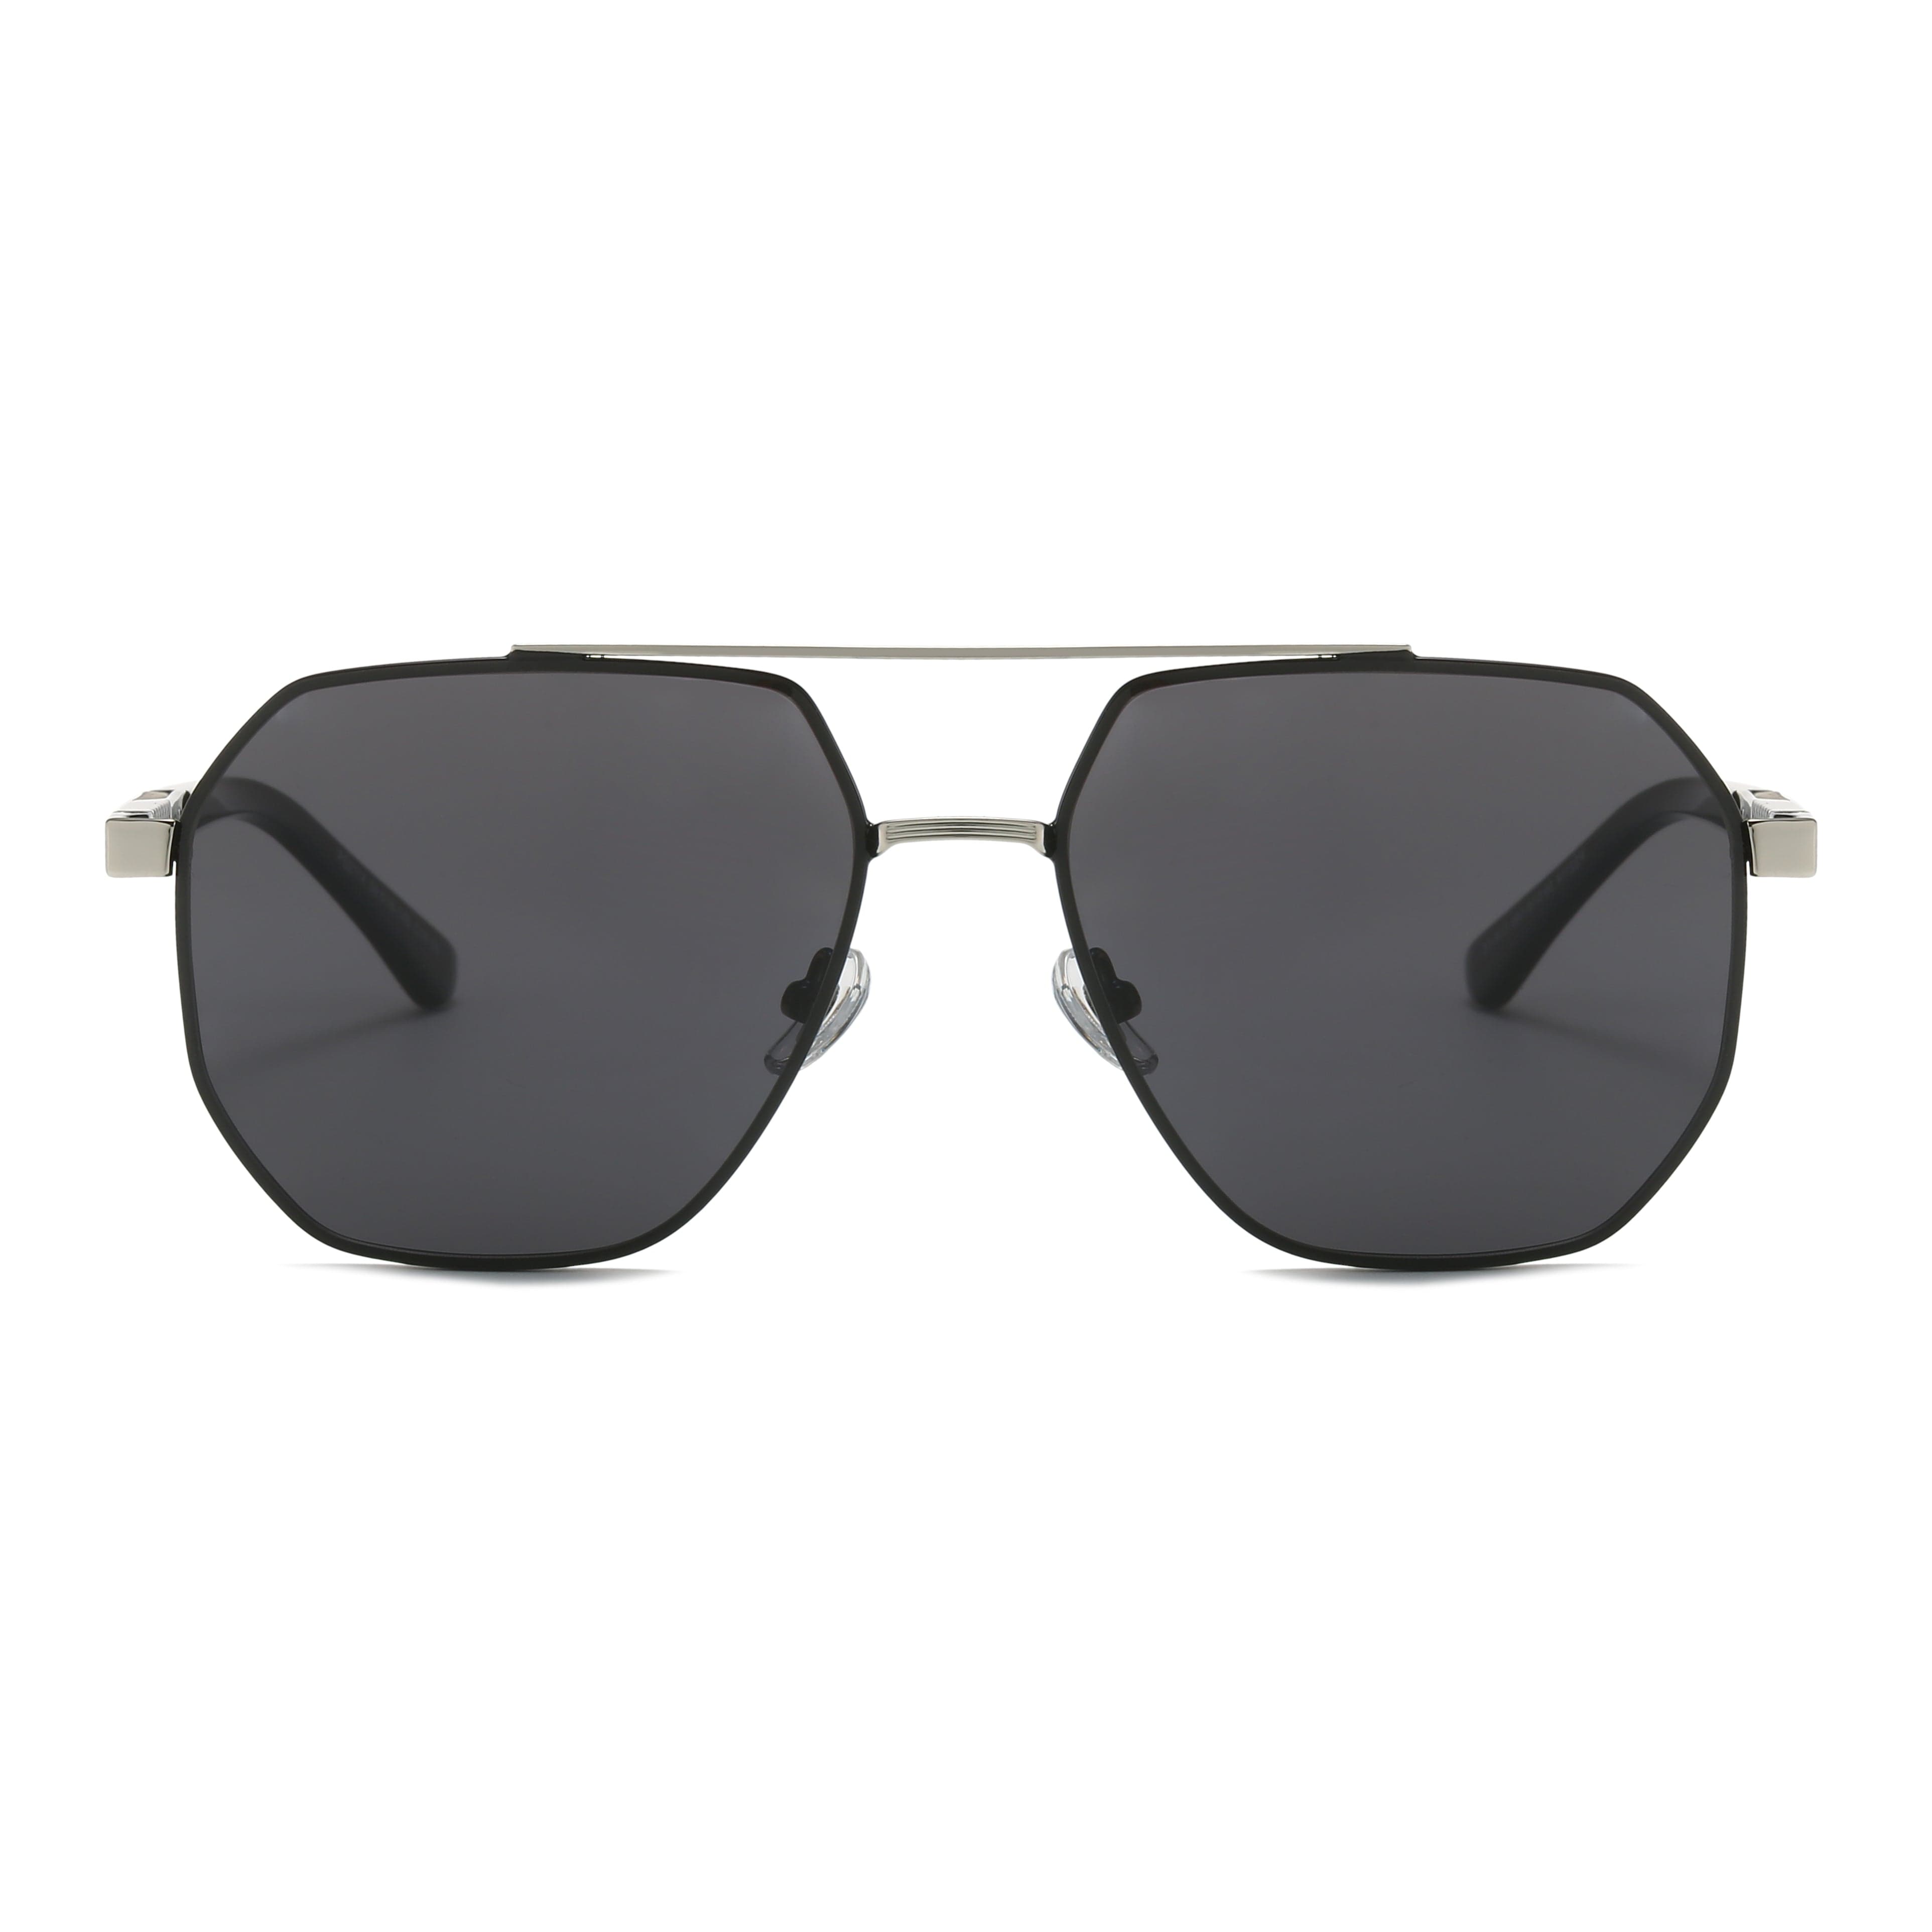 GIUSTIZIERI VECCHI Sunglasses Medium / Black Golden Grove Uno